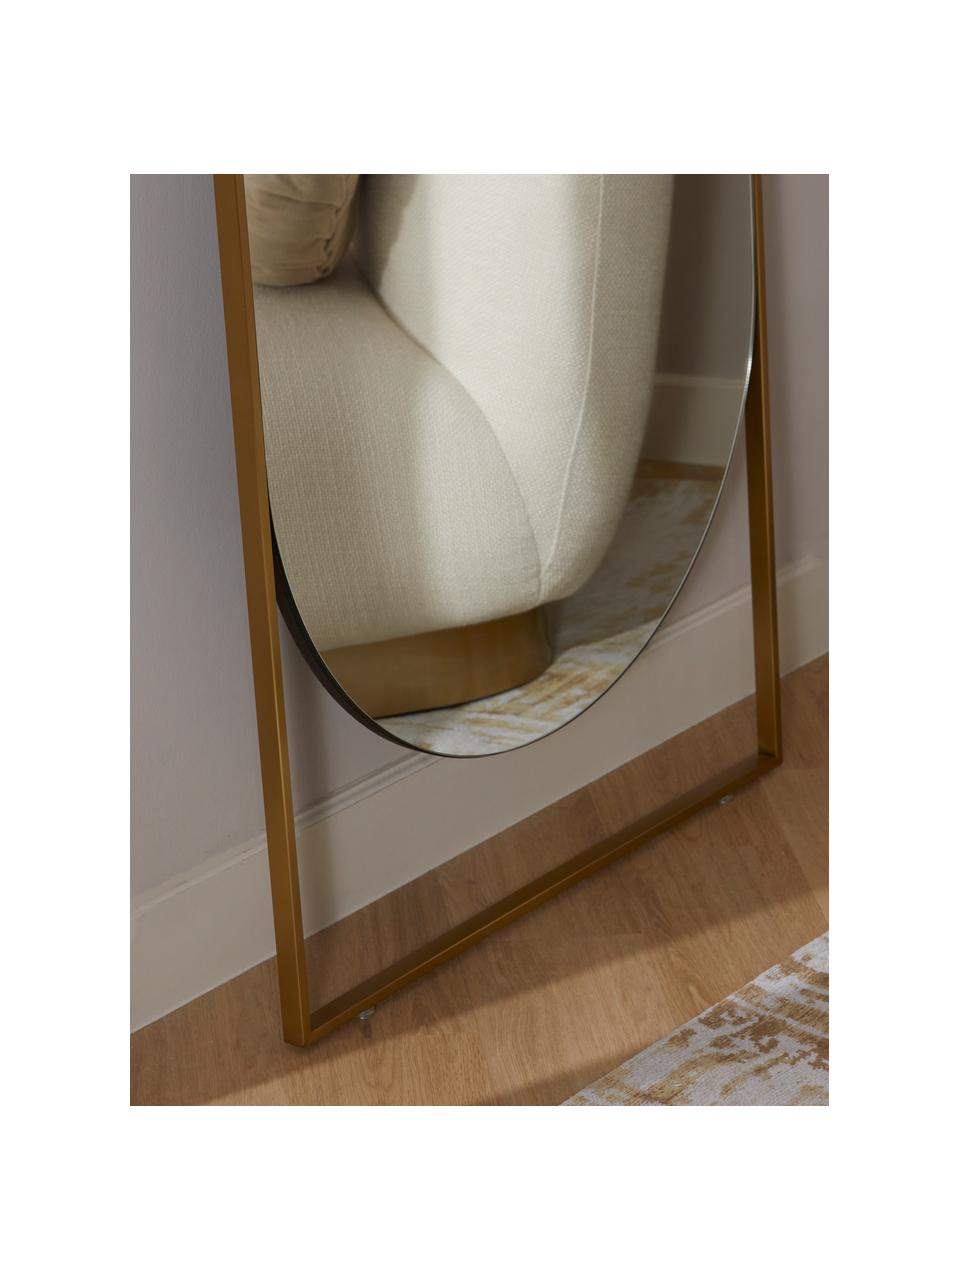 Rechthoekige leunende spiegel Masha met messingkleurige metalen lijst, Lijst: gepoedercoat metaal, Messingkleurig, B 65 x H 160 cm